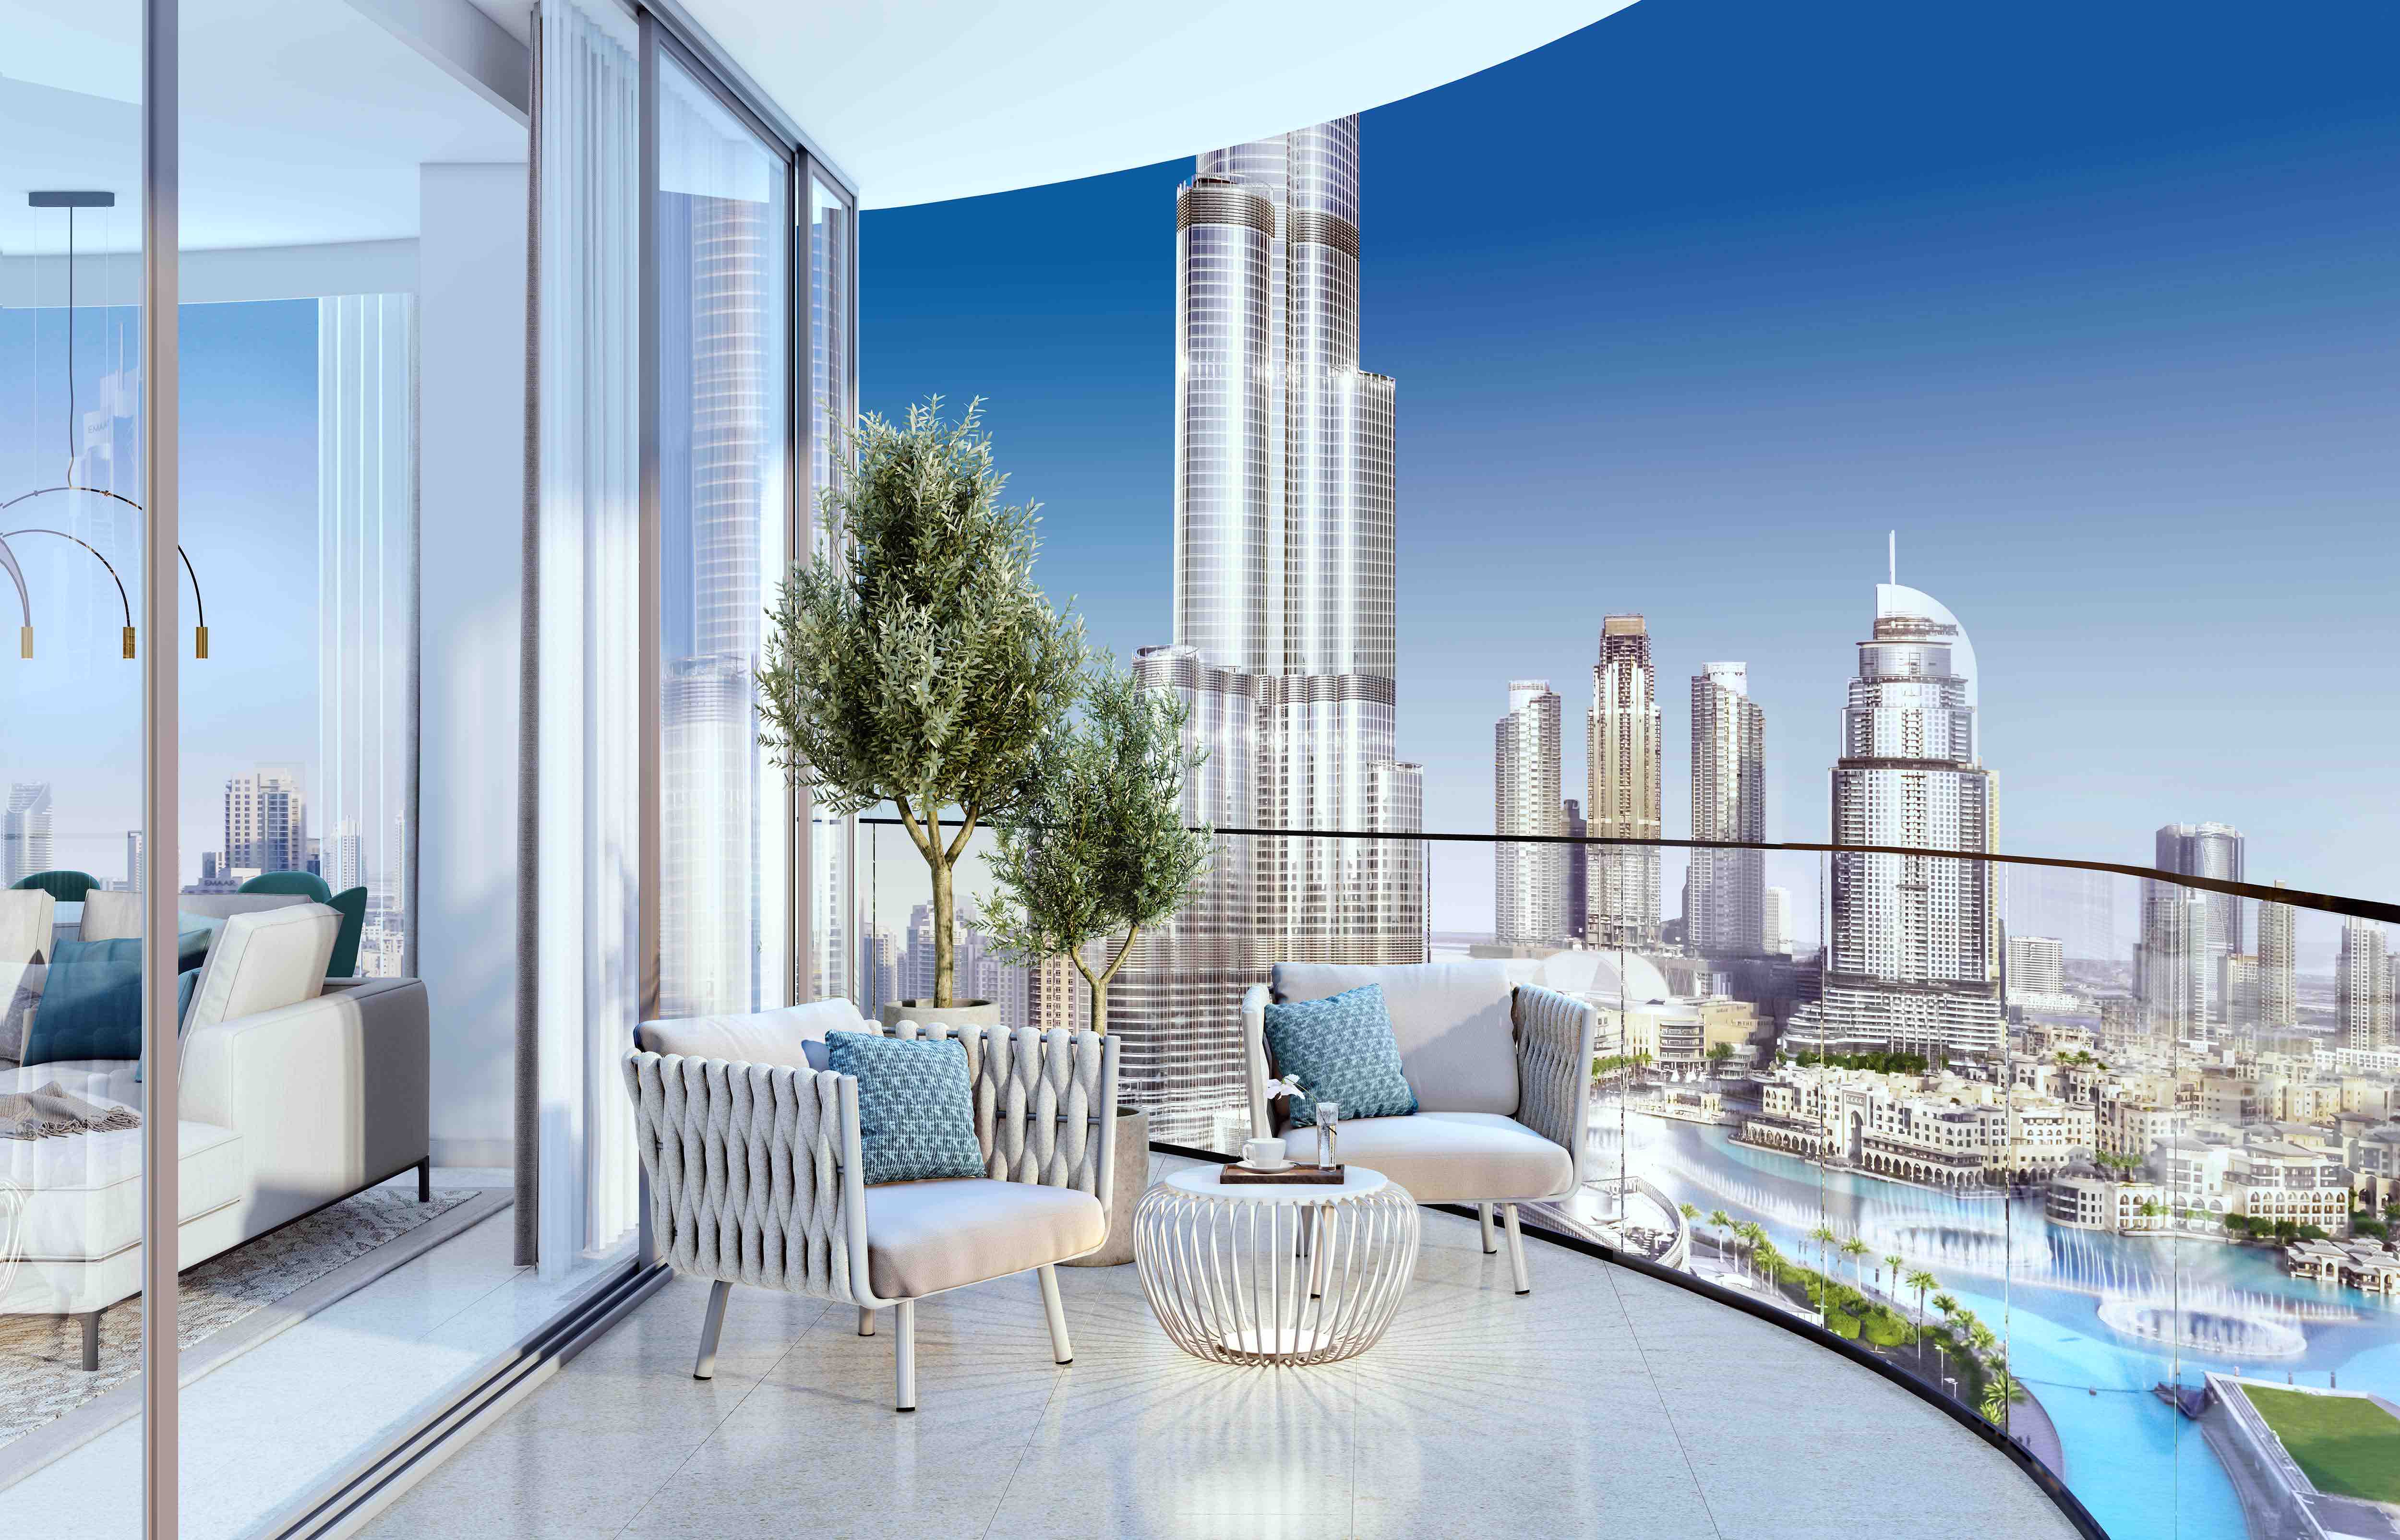 Grande Signature Residences by Emaar Properties